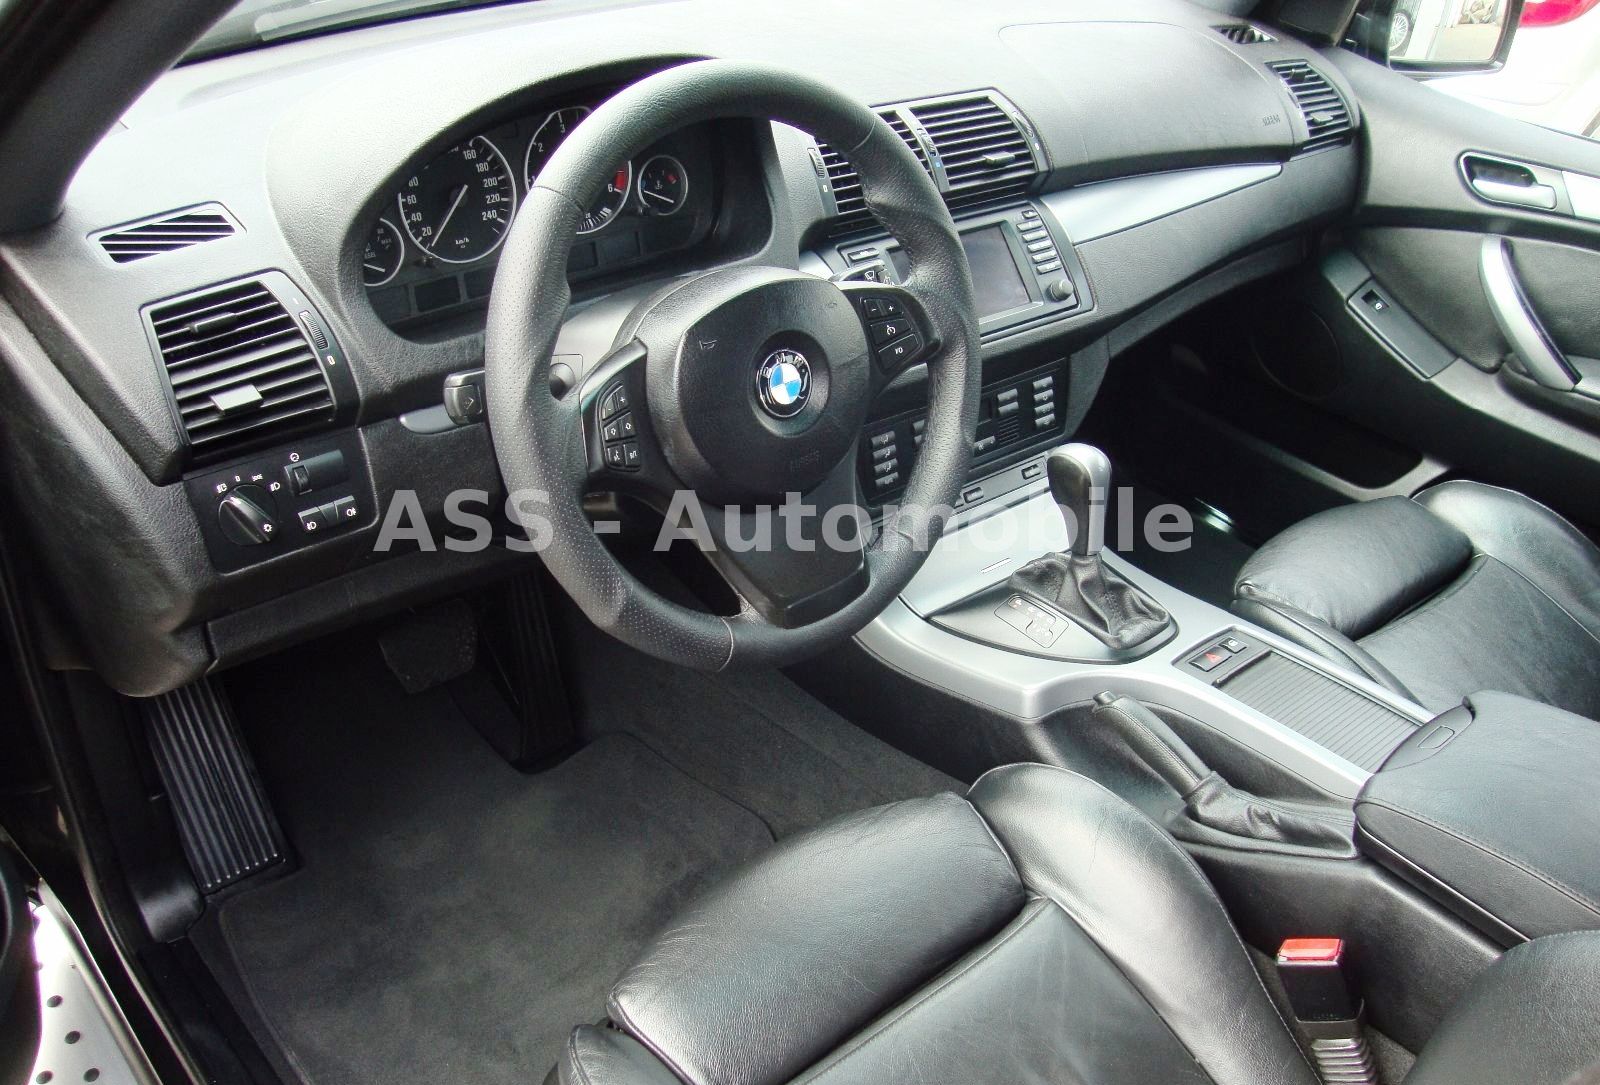 BMW X5 (01/04/2006) - 